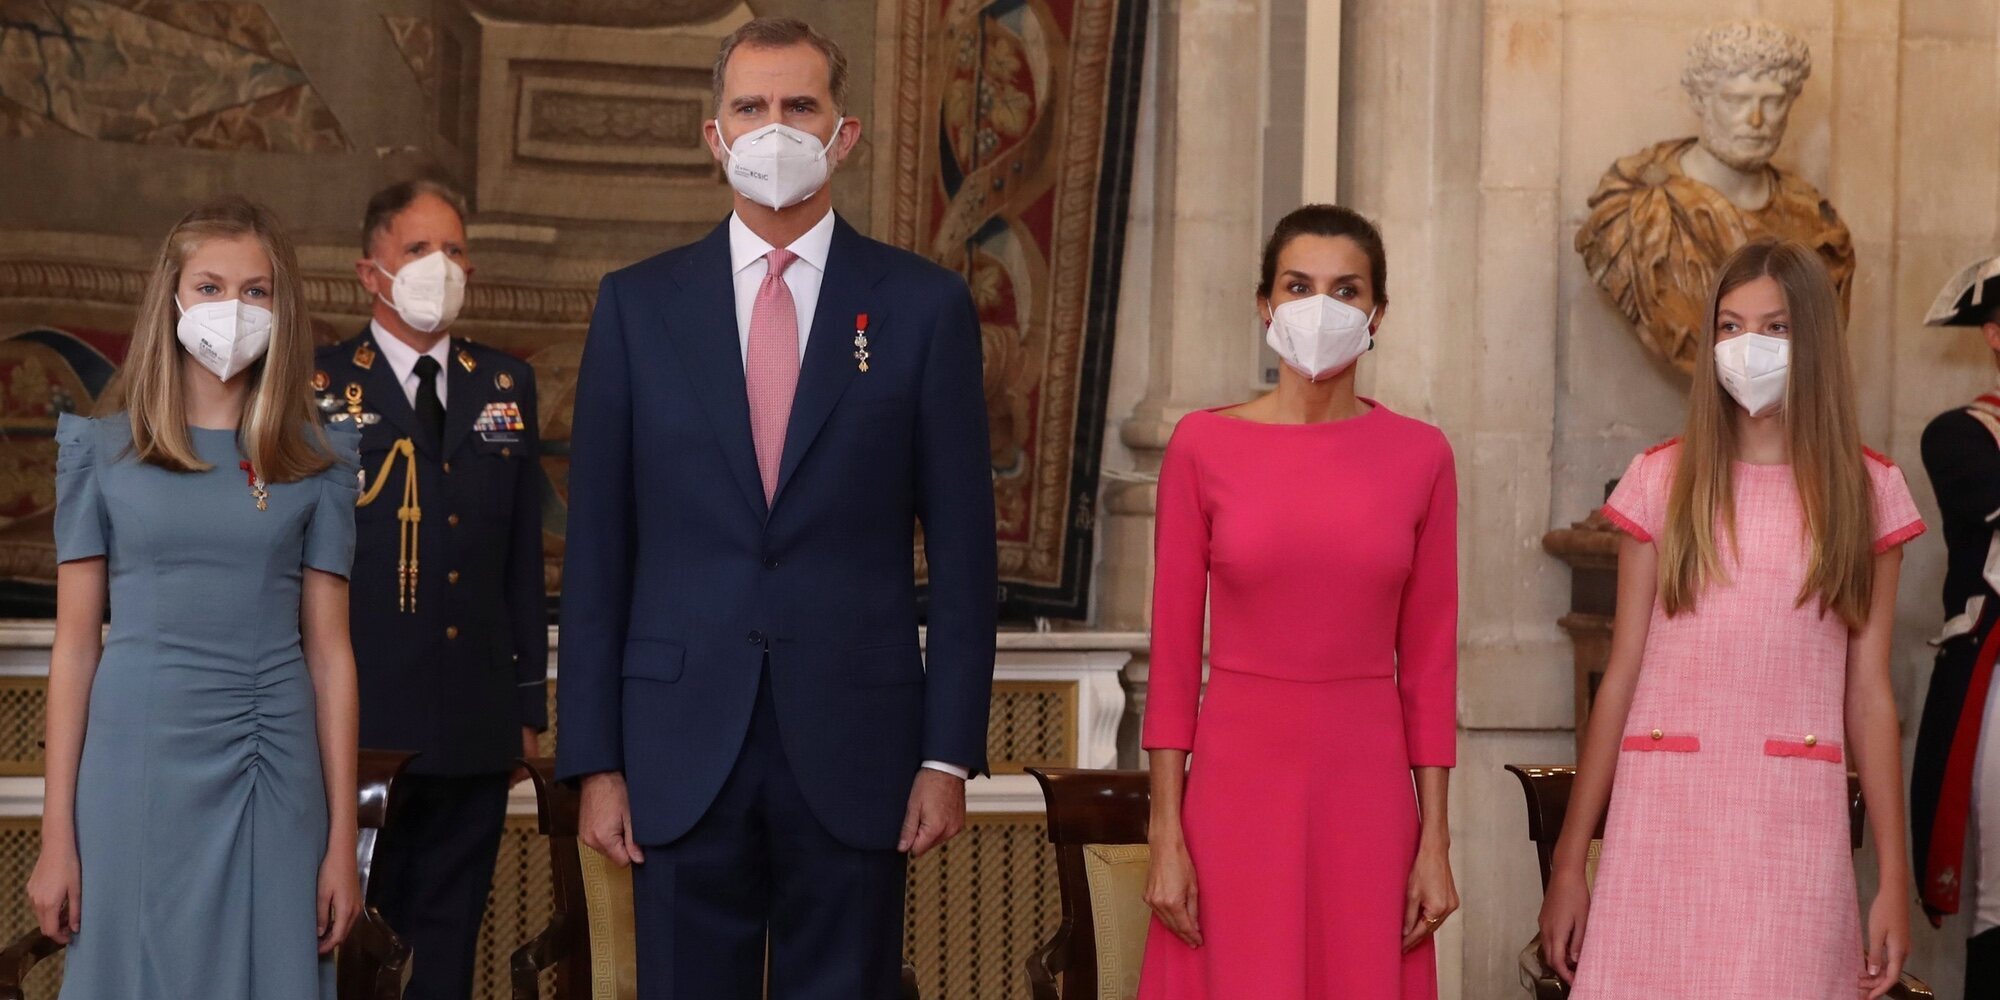 Los Reyes Felipe y Letizia, la Princesa Leonor y la Infanta Sofía rinden homenaje a los 'héroes' de la pandemia